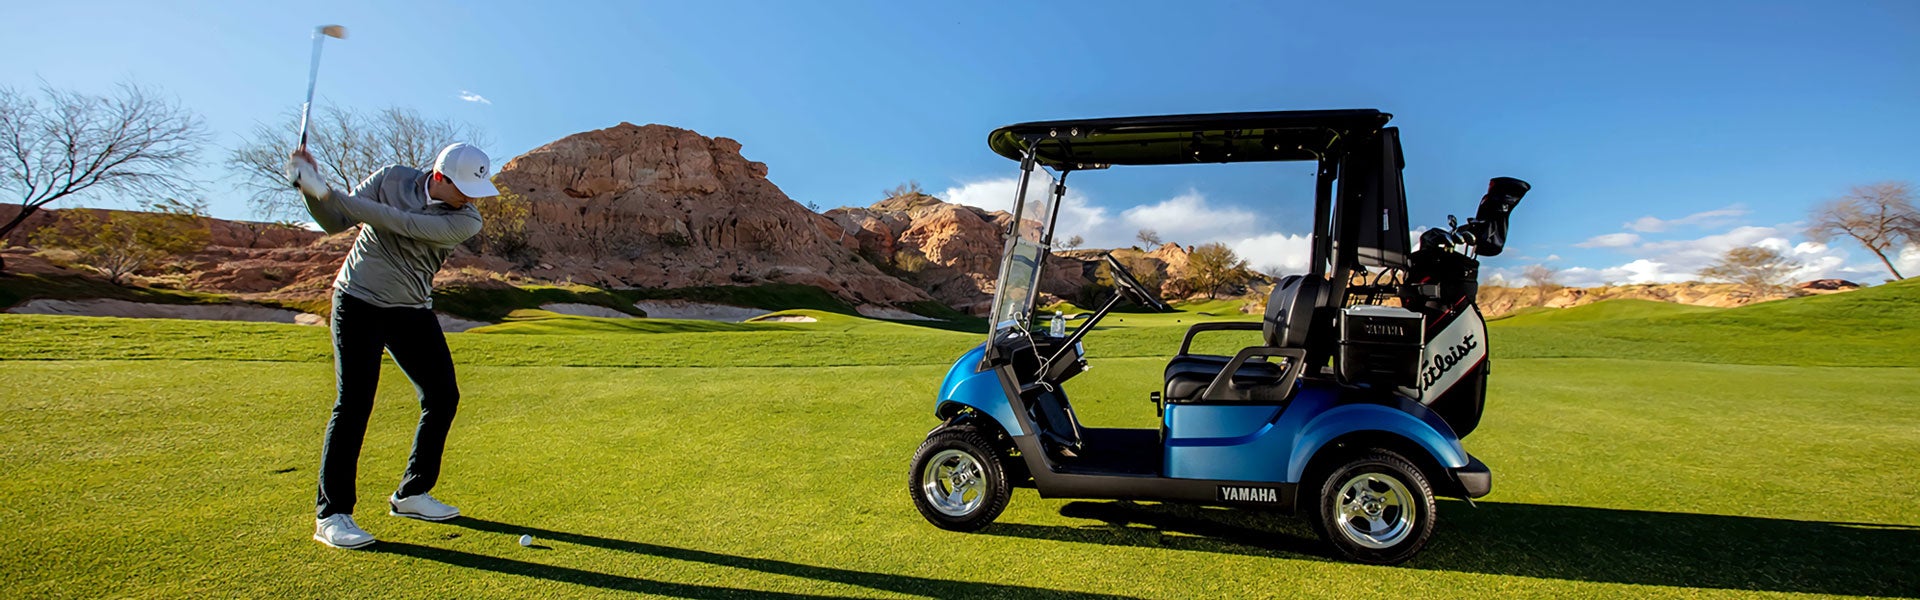 Golfer next to Yamaha cart